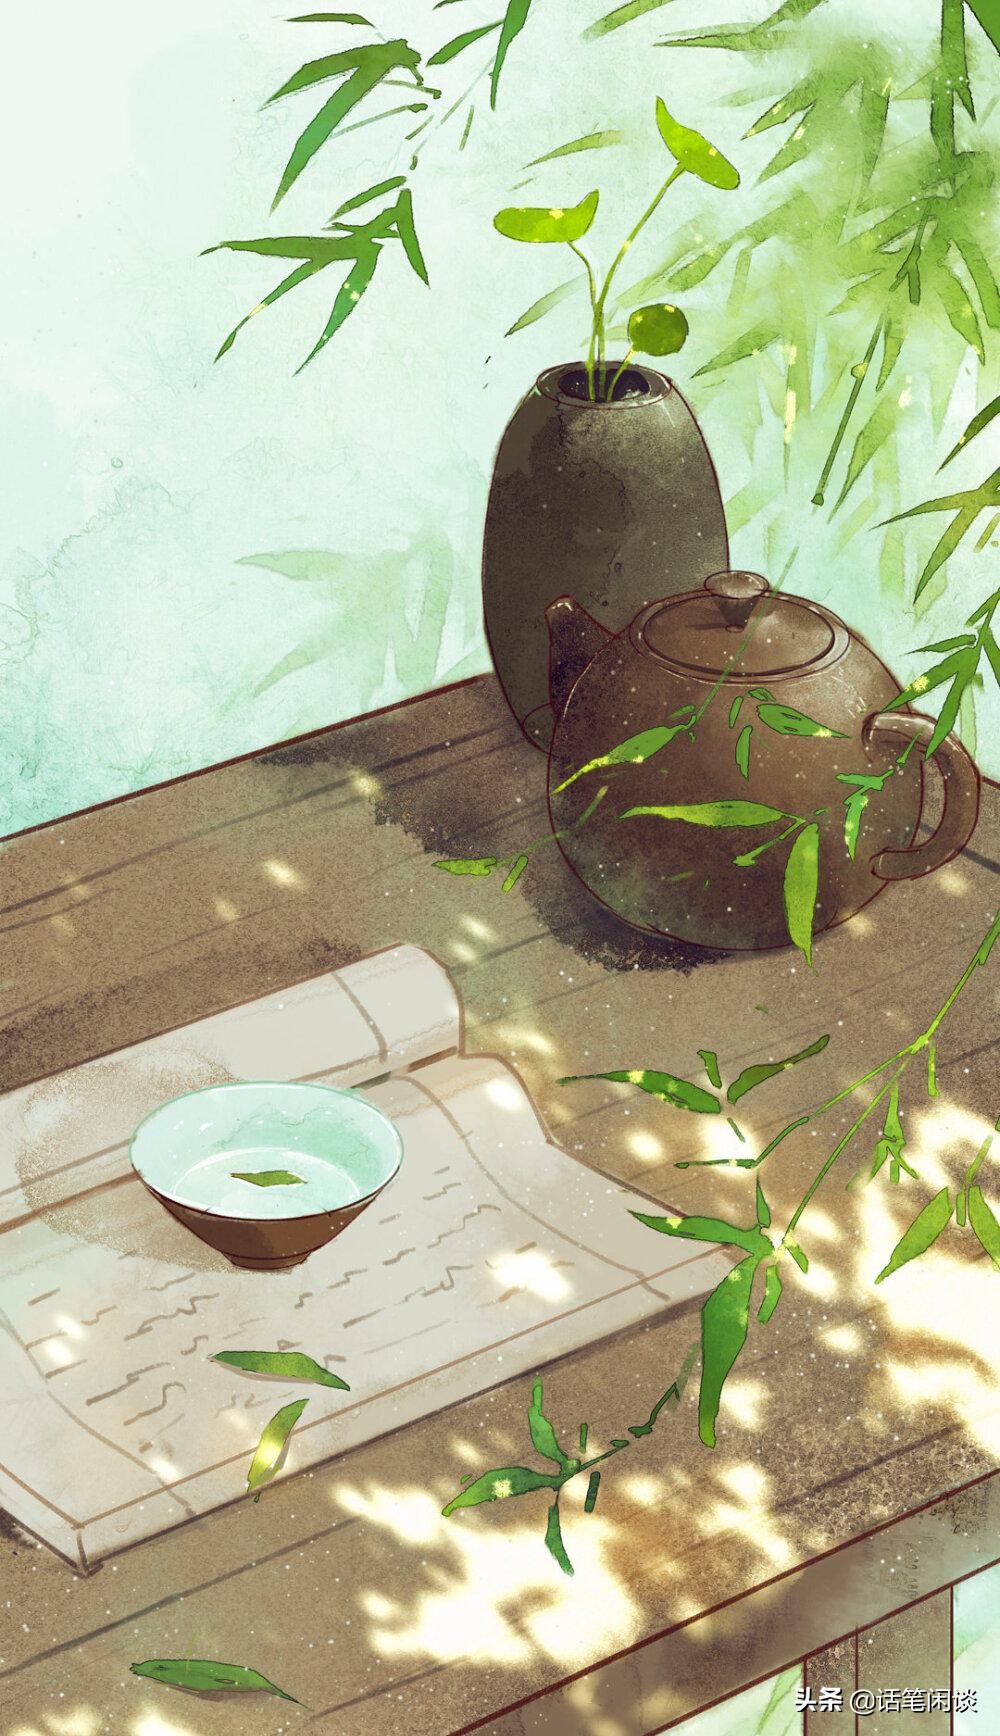 10句悠闲惬意的诗词:吴盐胜雪,春水煎茶,读起来像神仙之语一样